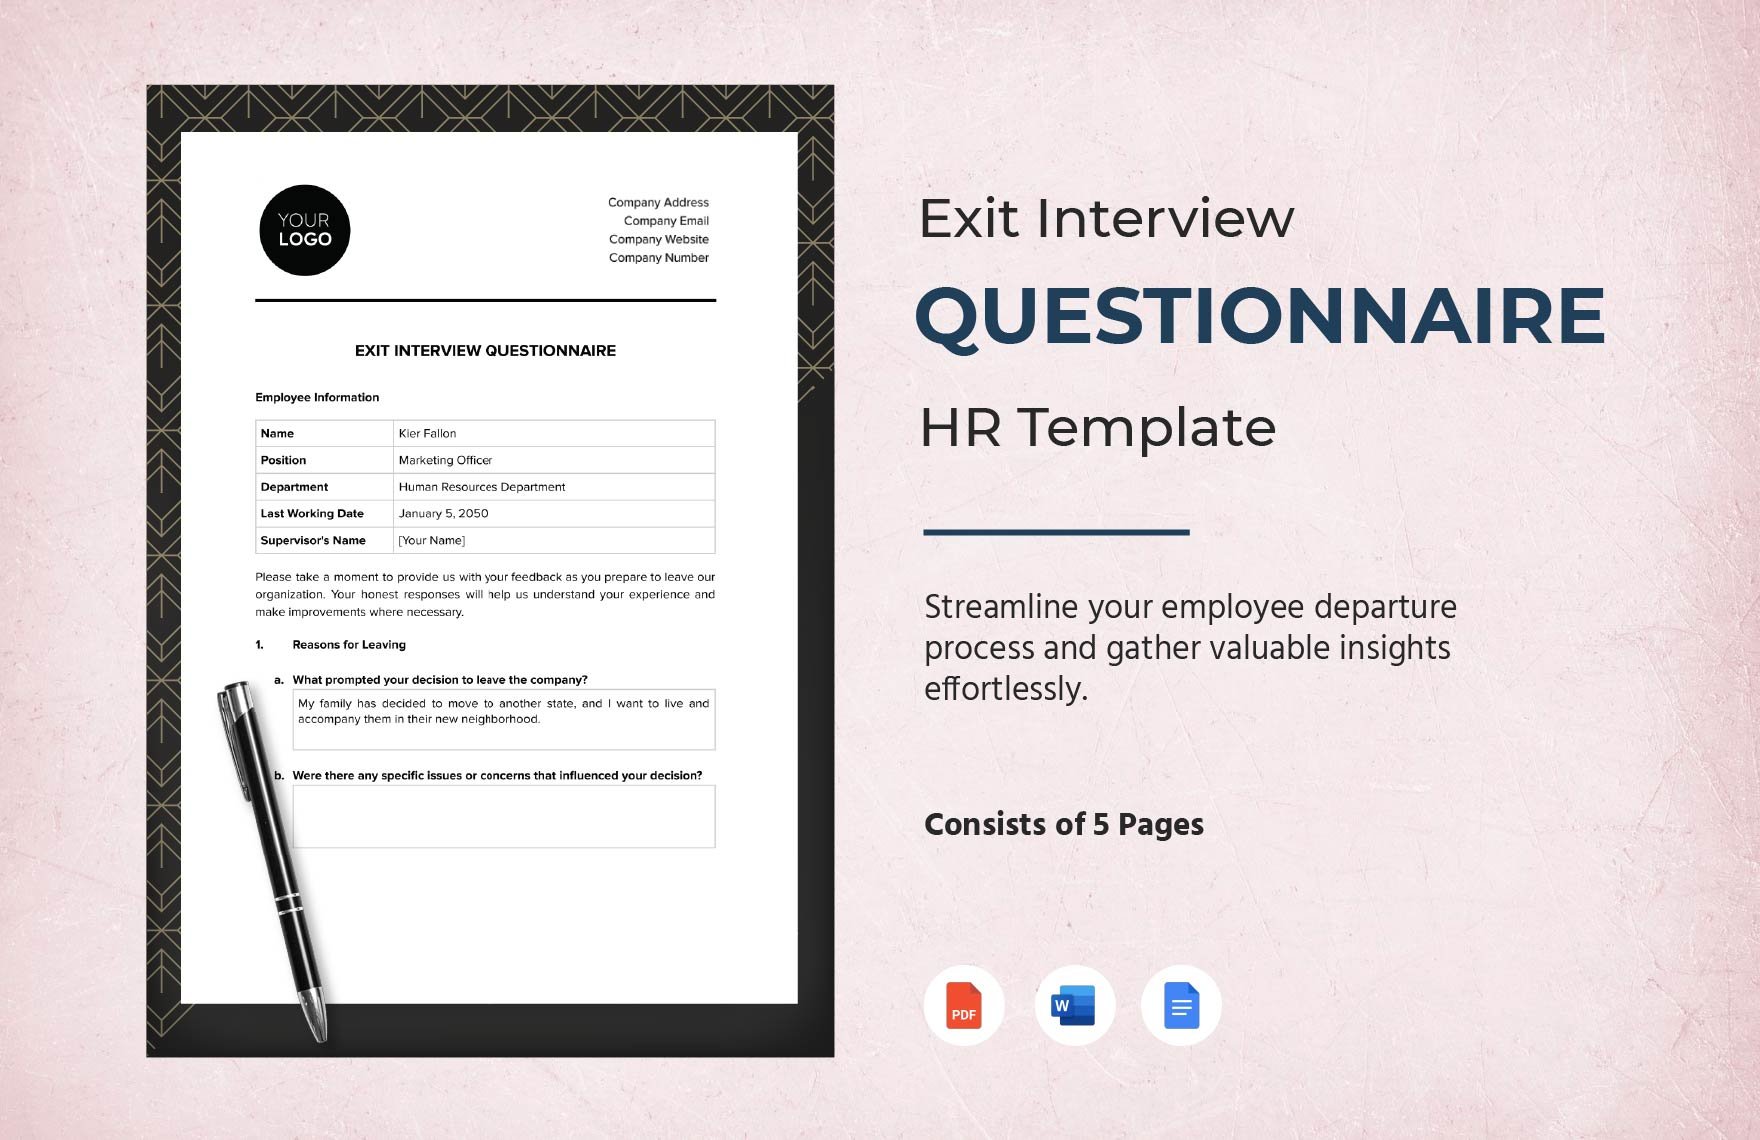 Exit Interview Questionnaire HR Template